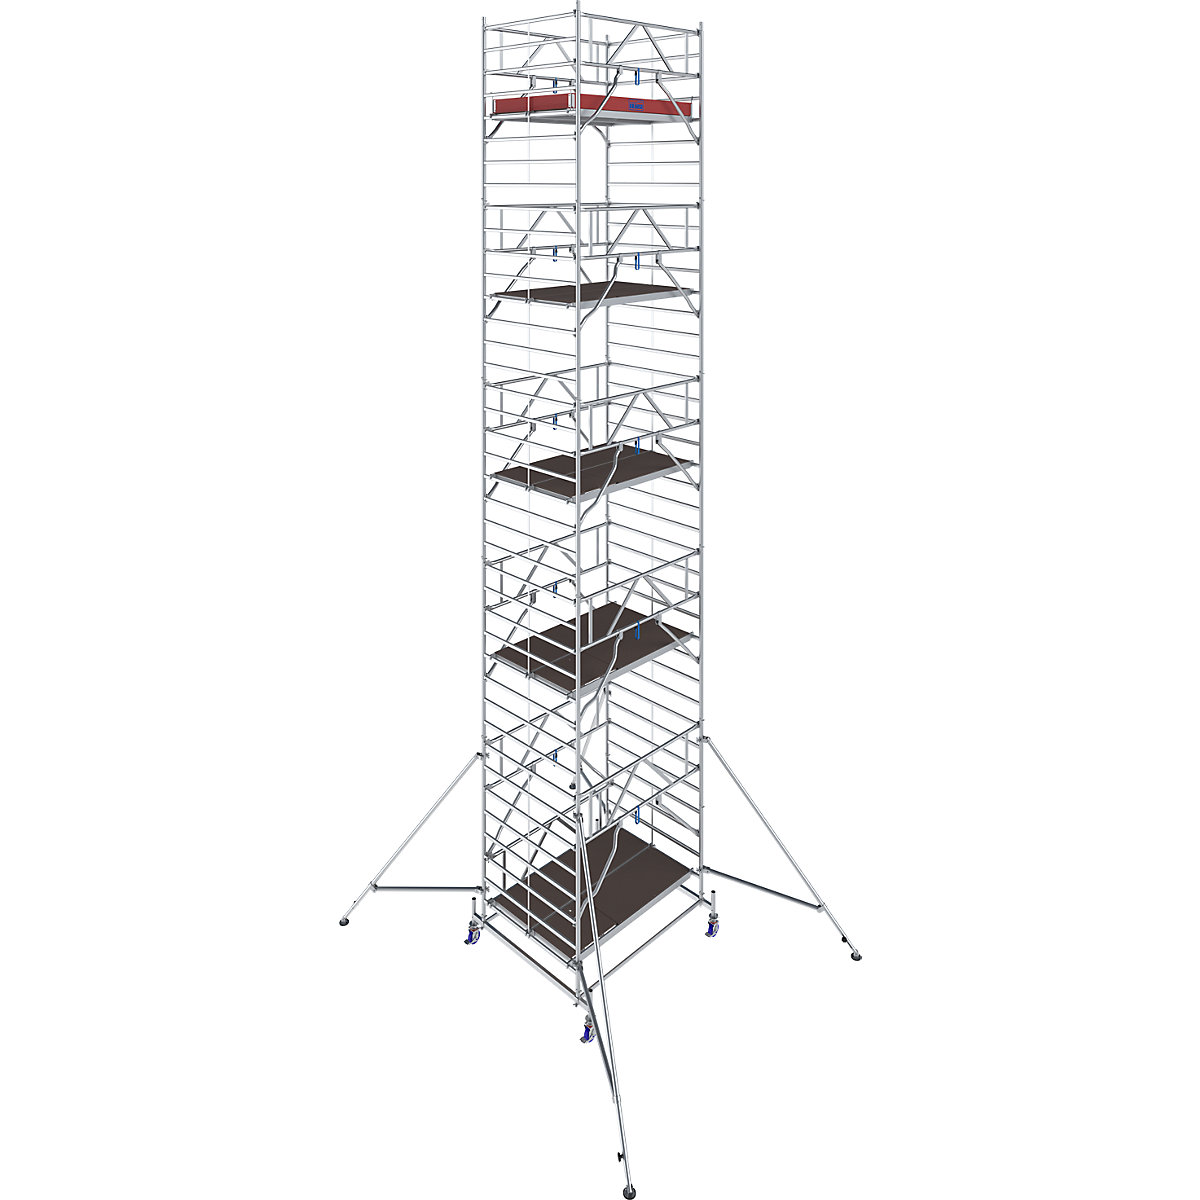 Fahrgerüst STABILO Serie 50 KRAUSE, Plattformlänge 2 m, Arbeitshöhe 11,40 m